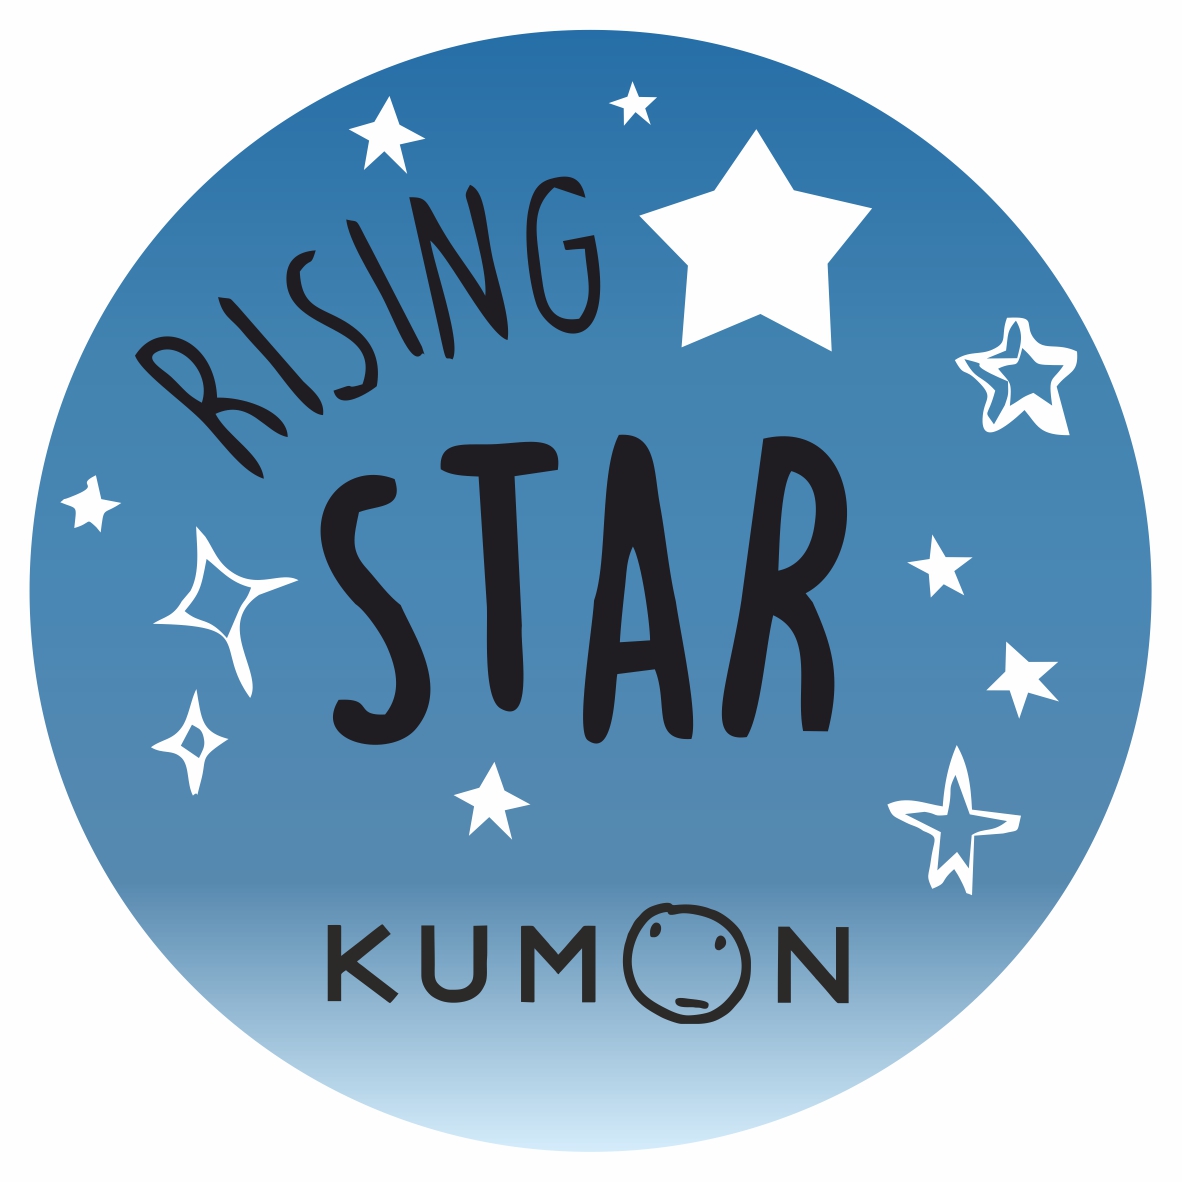 KUMON Rising Star blue 27mm Round